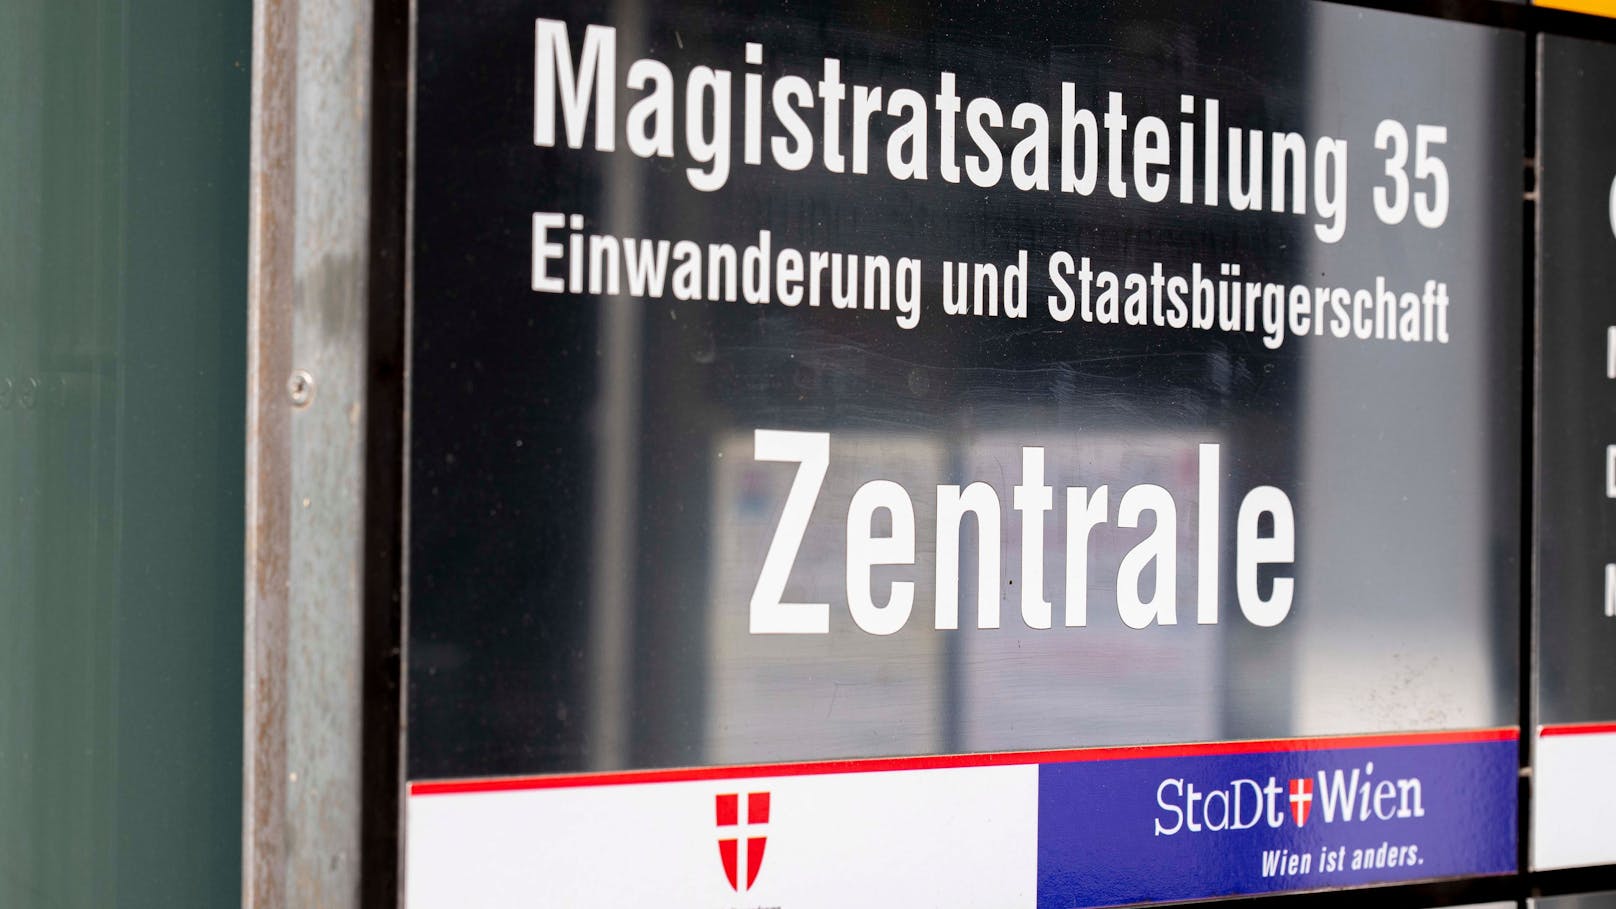 Bei einer Sondersitzung im Wiener Rathaus wurde heftig über die Vergabe von Staatsbürgerschaften diskutiert.